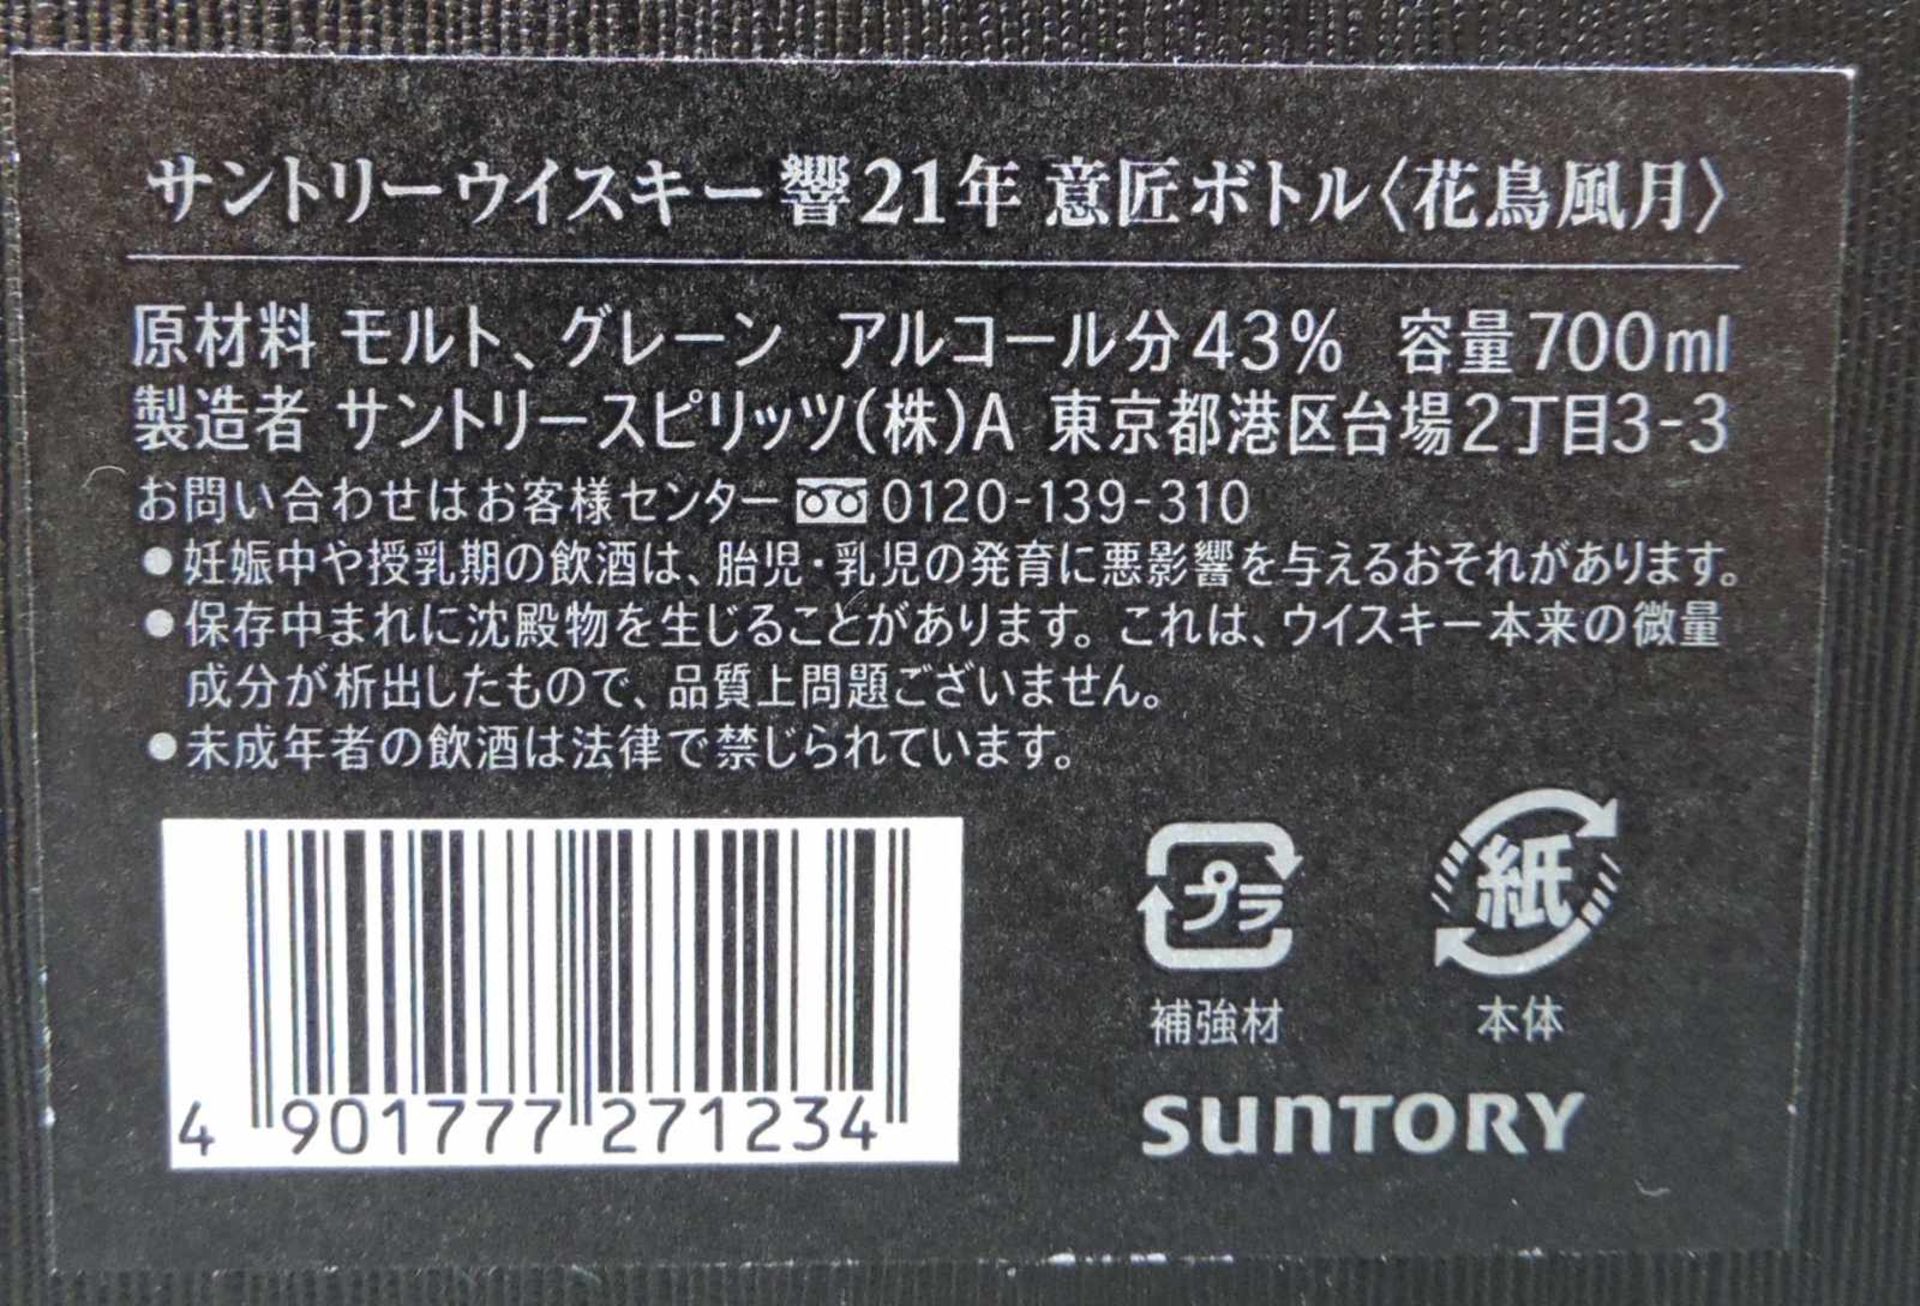 Hibiki Sutory Whiskey 21 years old. Kacho Fugetsu. Original Box. Eine ganze Flasche 700ml. Produkt - Image 4 of 4